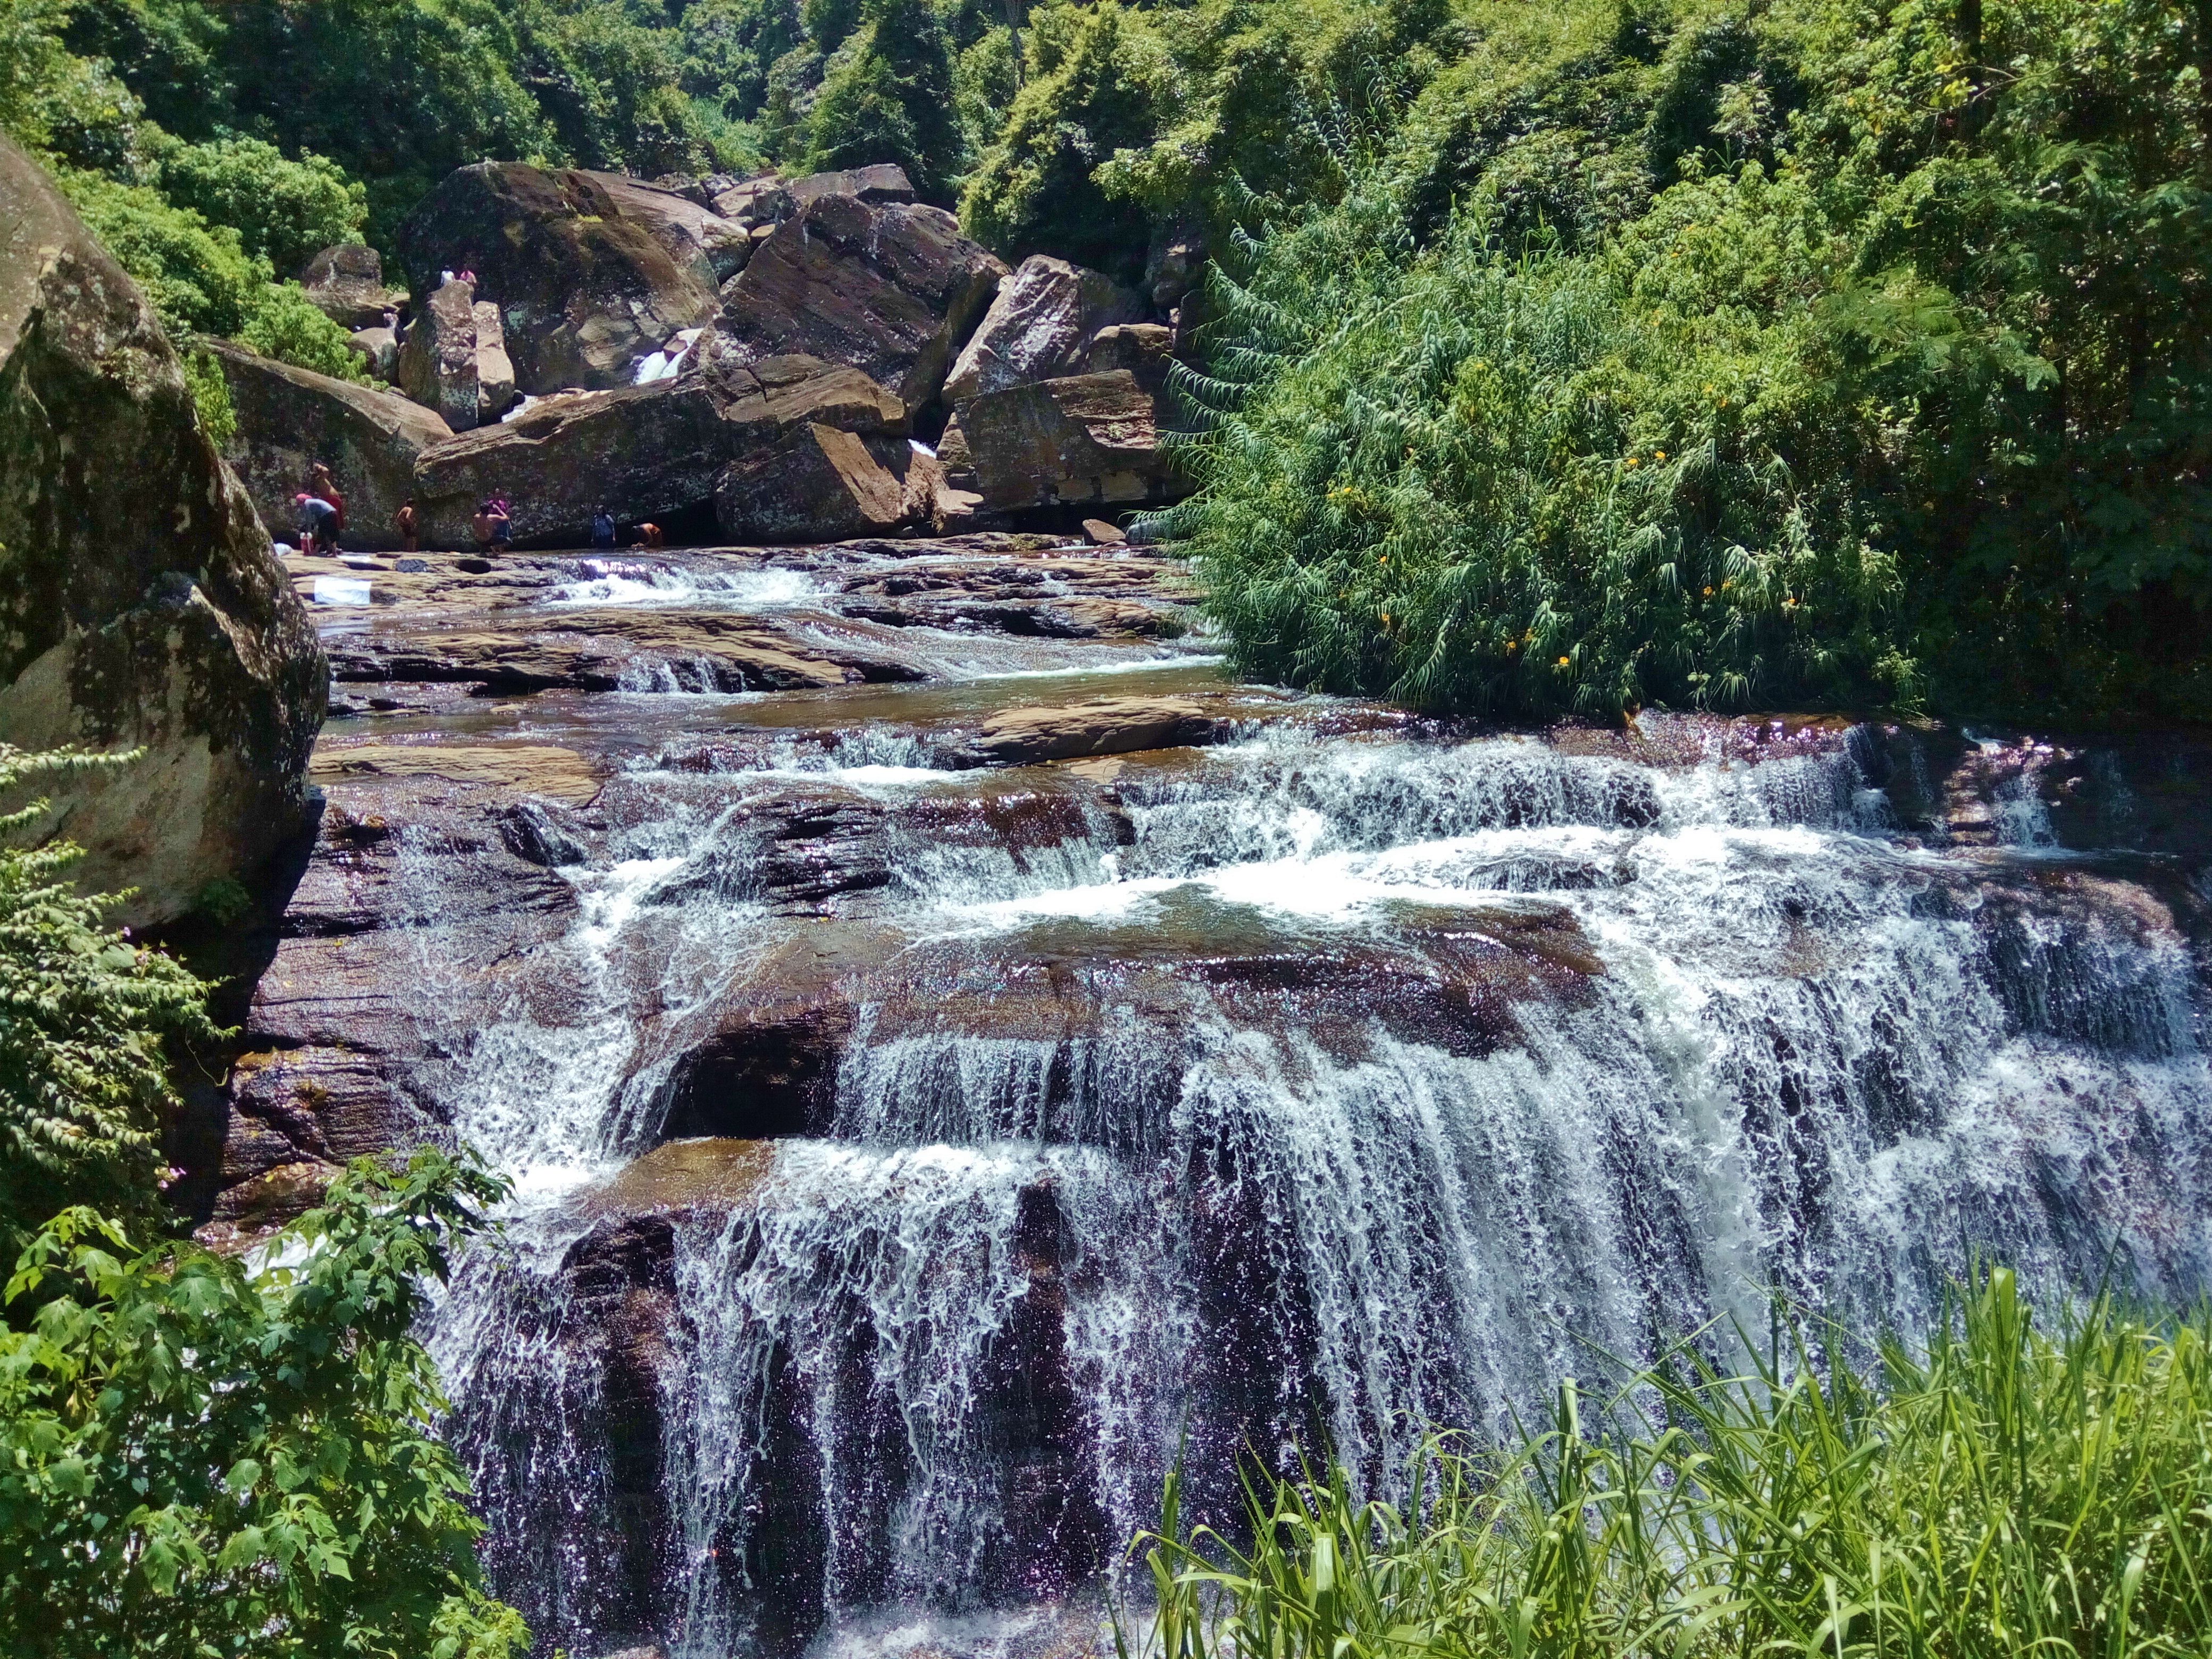 Ramboda falls